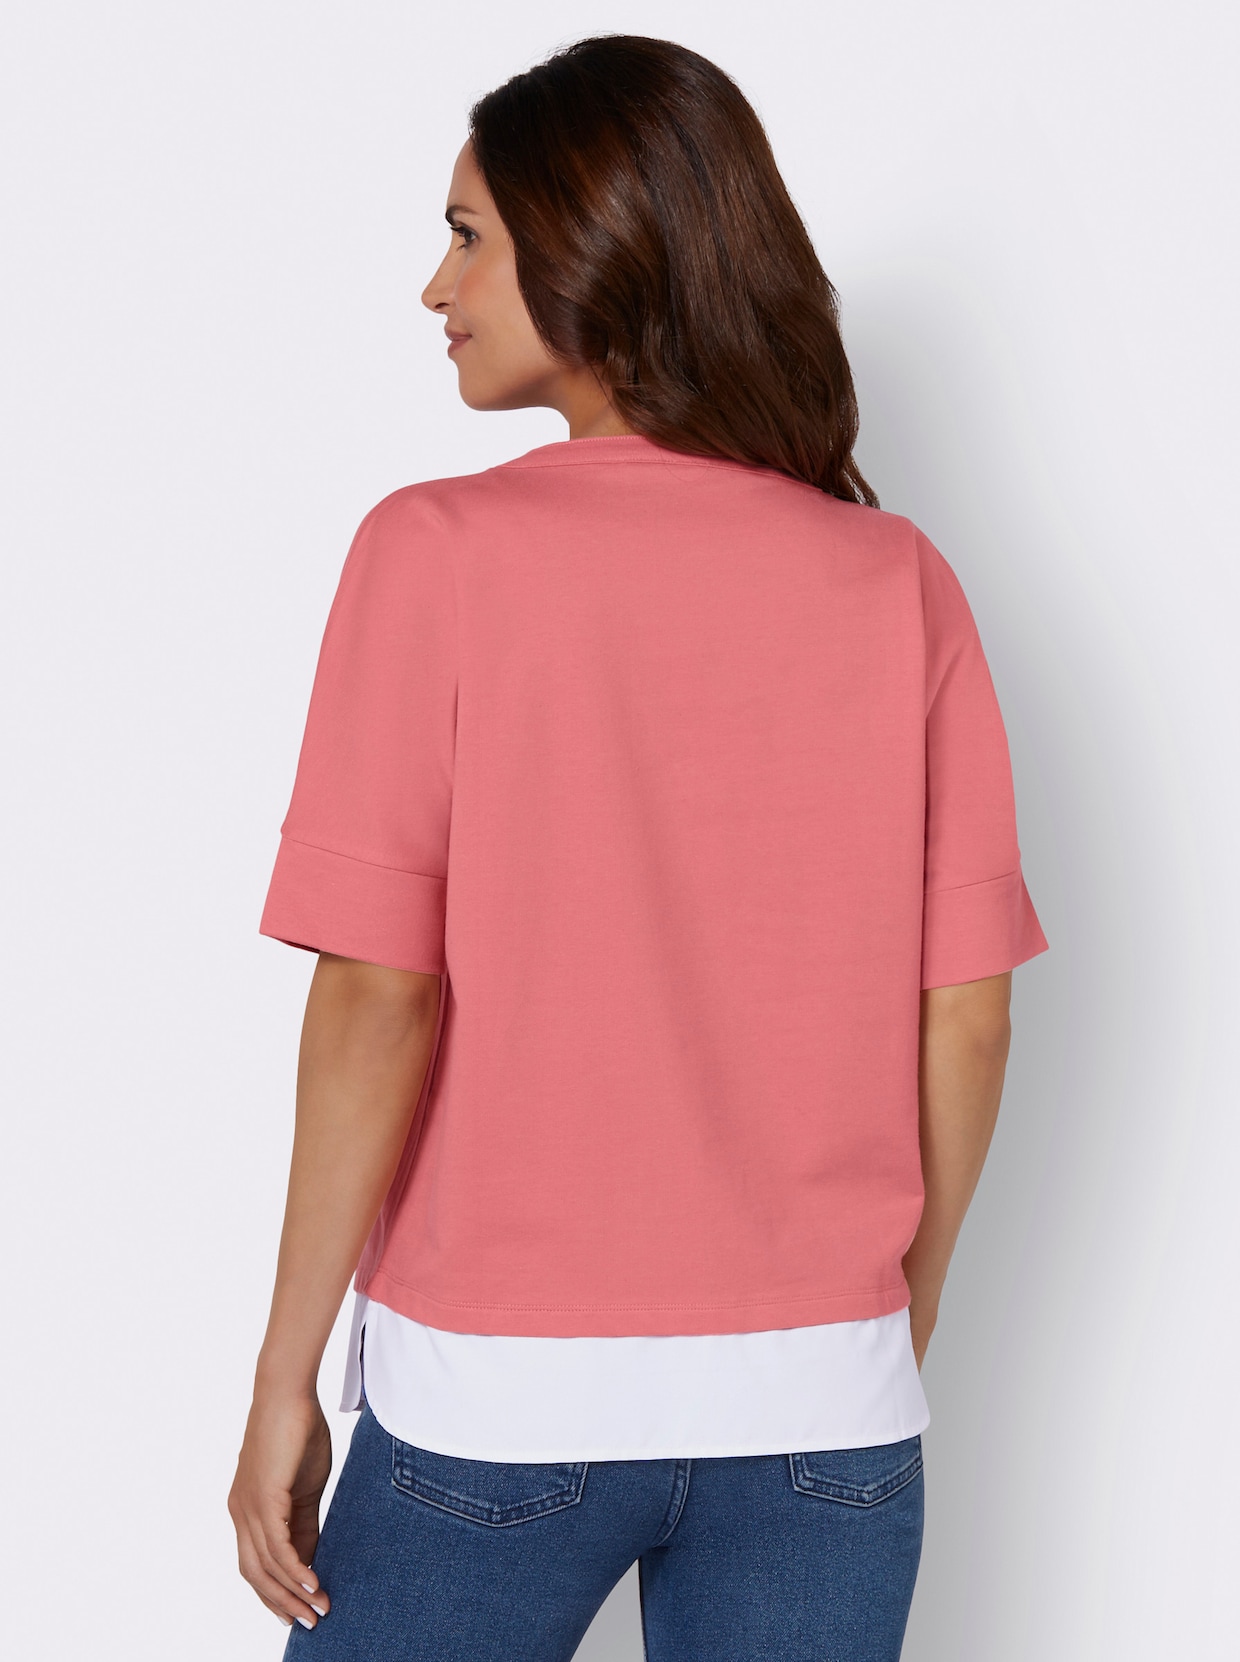 2-in-1-Shirt - flamingo-ecru